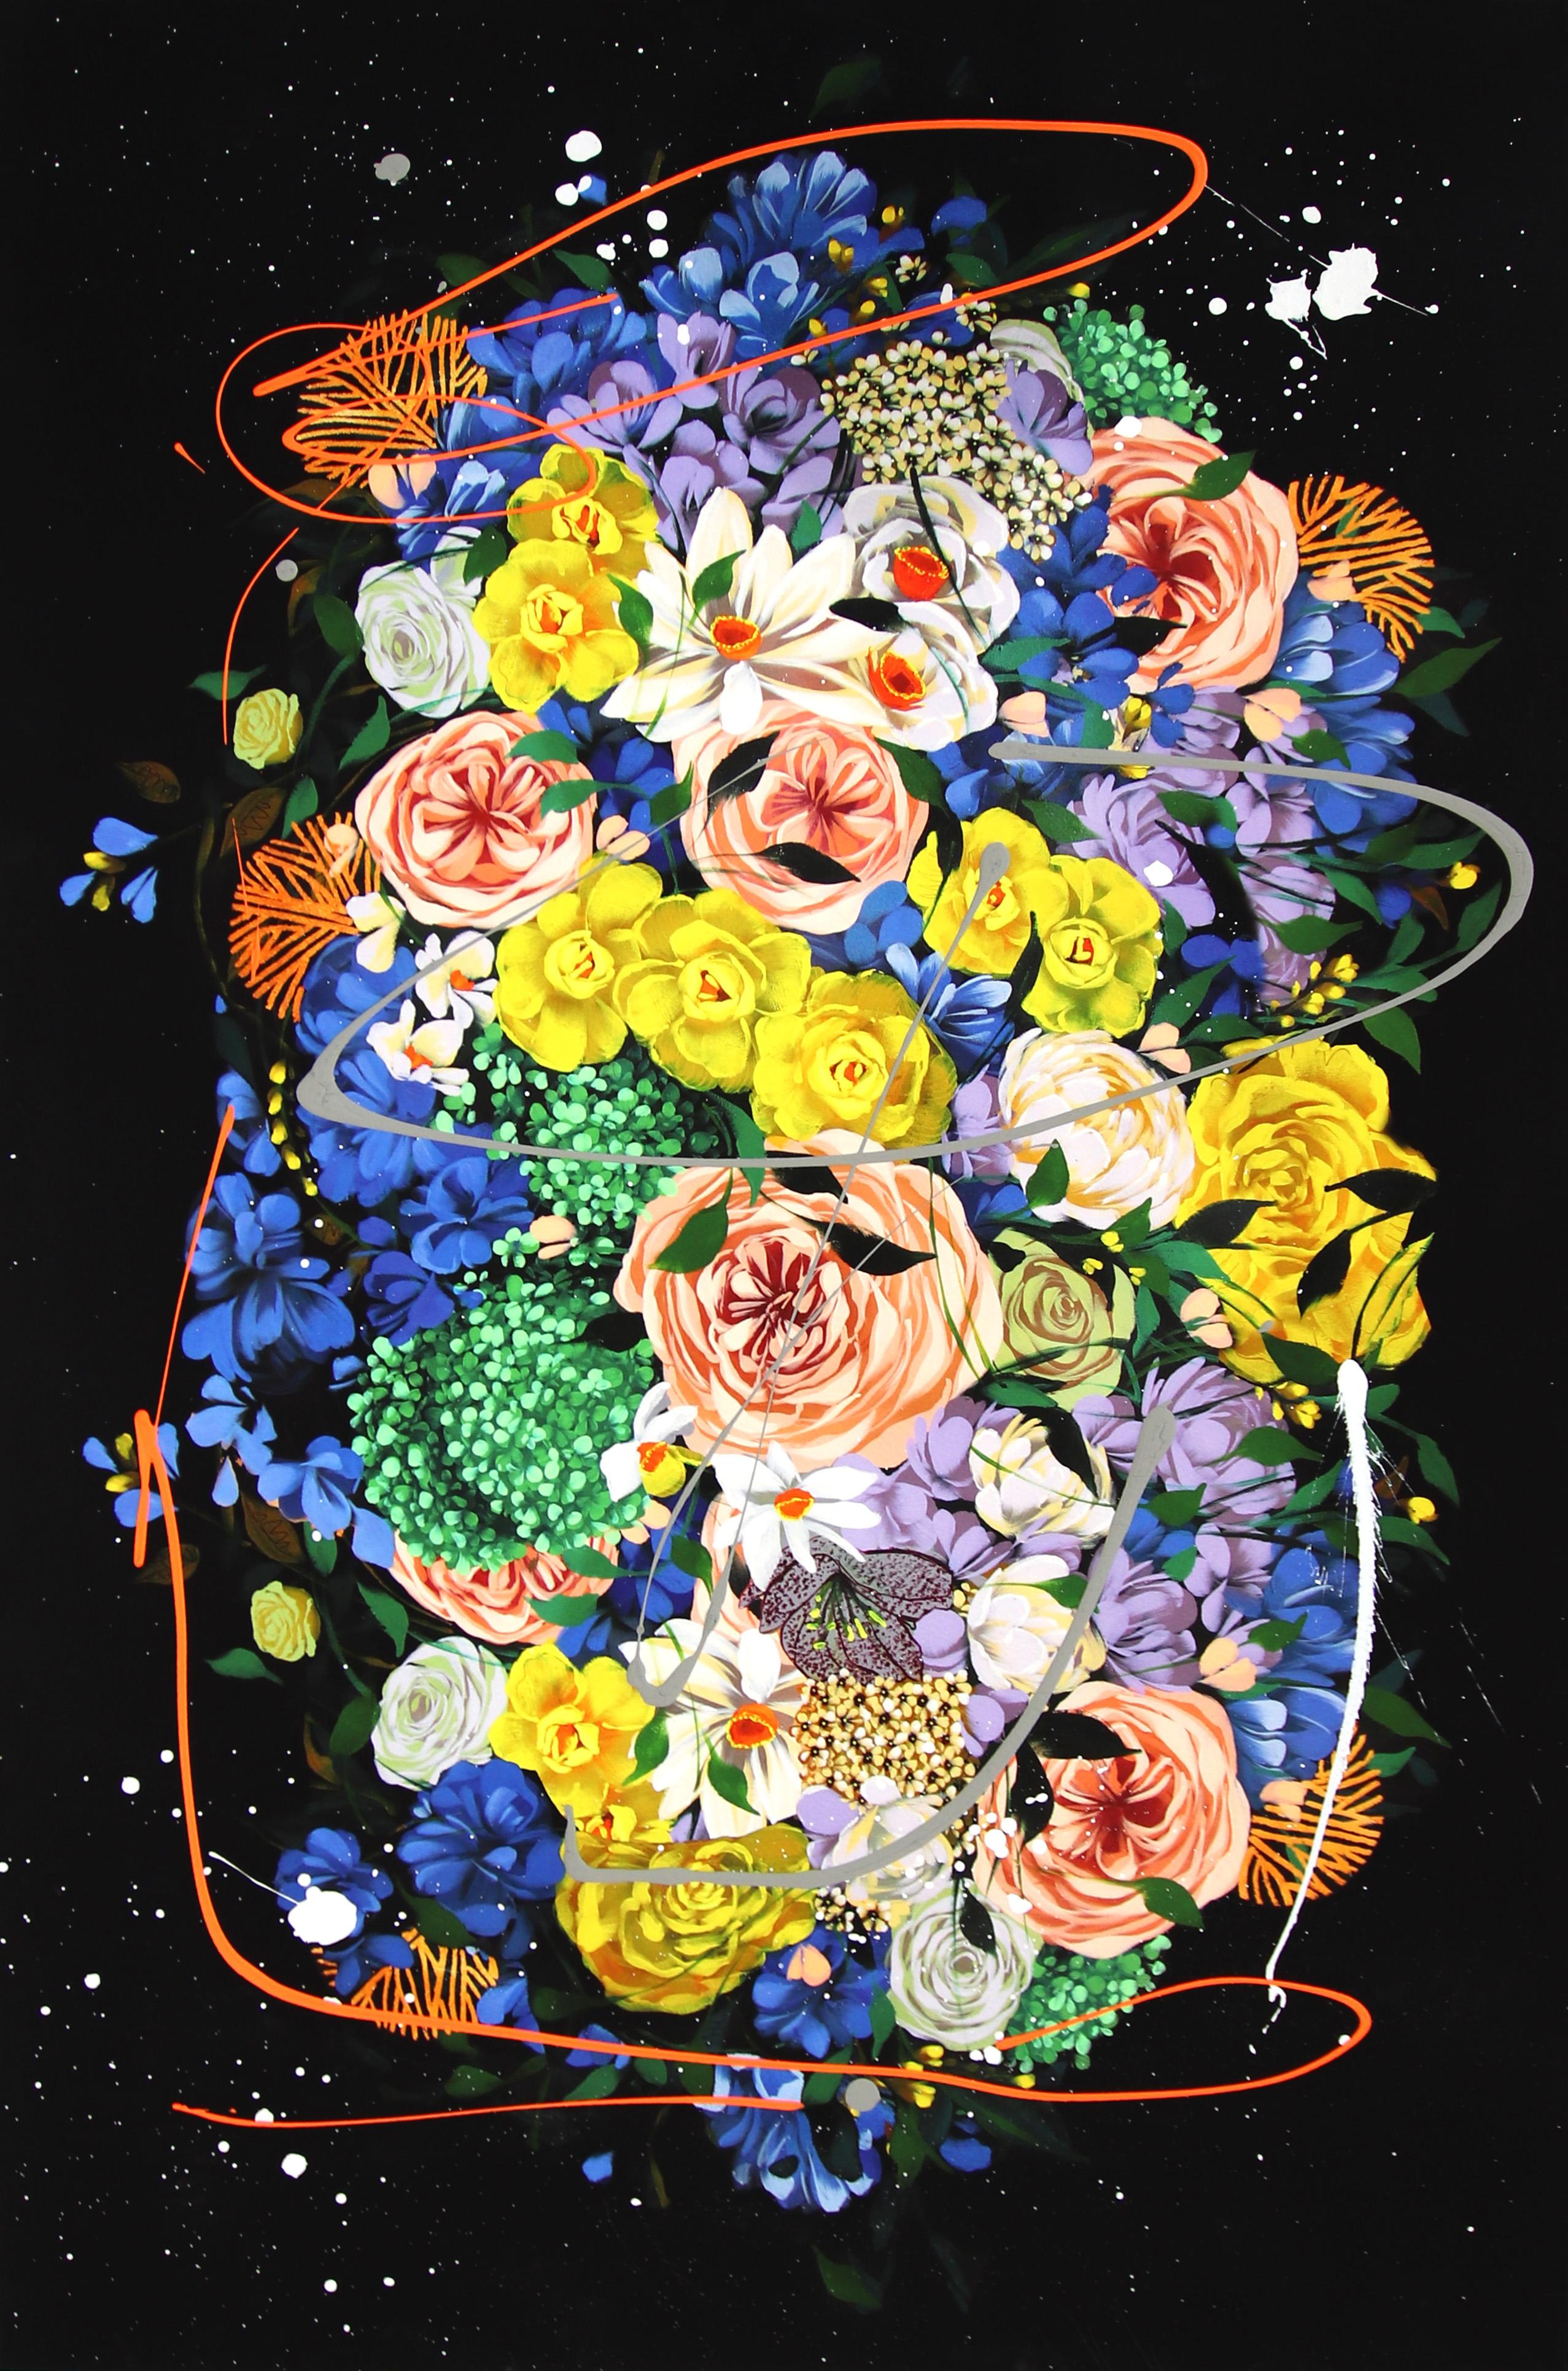 
Les portraits floraux de l'artiste libano-américaine Sally K sont à la fois dévorants et stimulants. Inspirée par les femmes fortes et féminines, elle crée des peintures pop-réalistes qui parlent de l'expérience féminine énergique, de